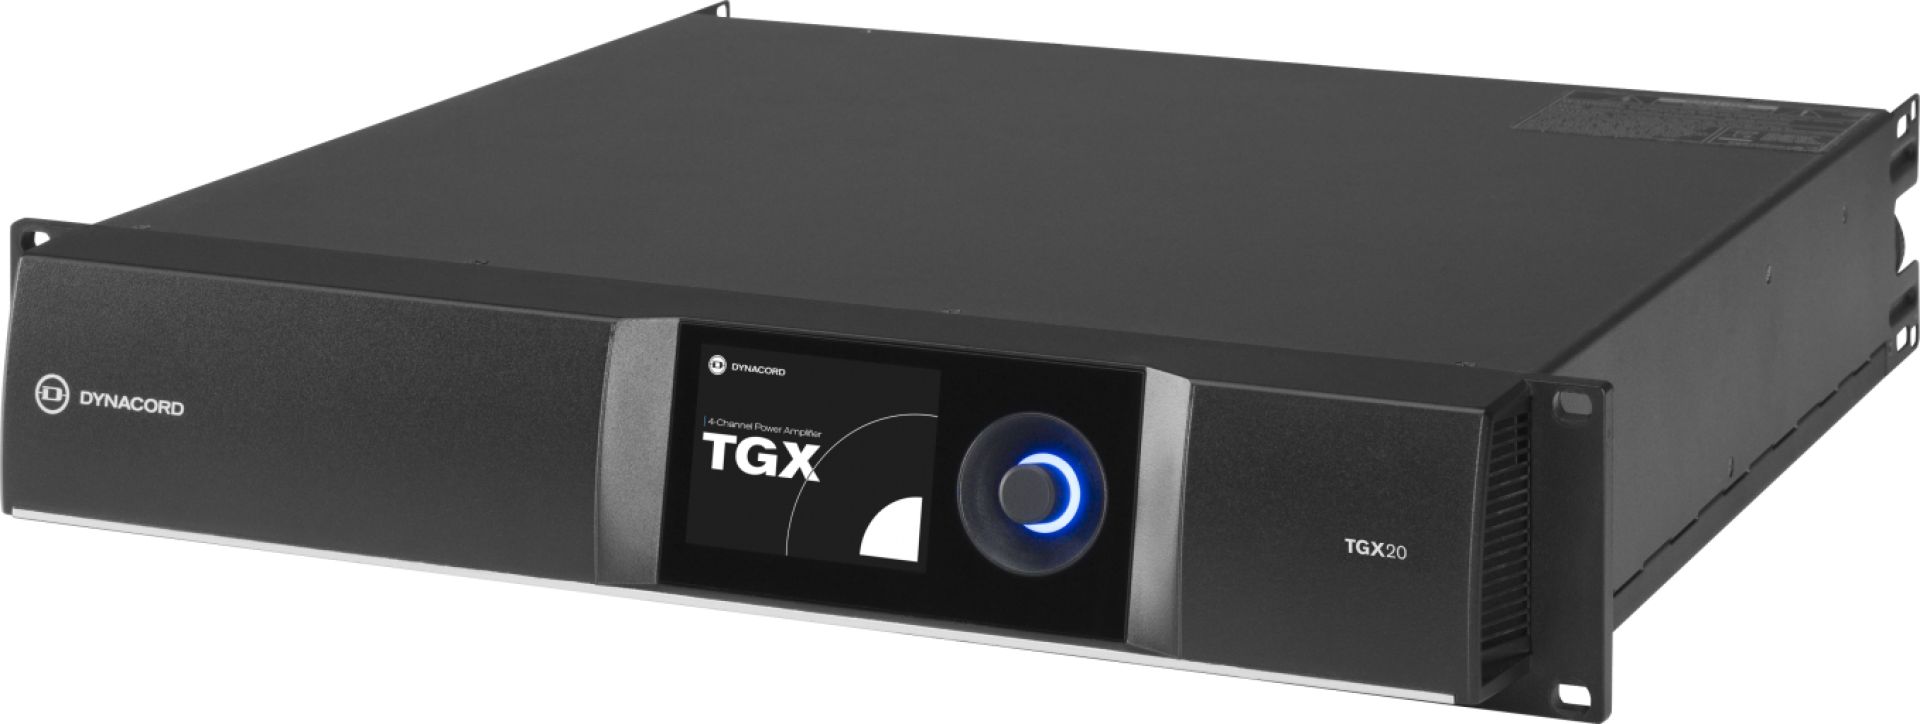 TGX amplifiers